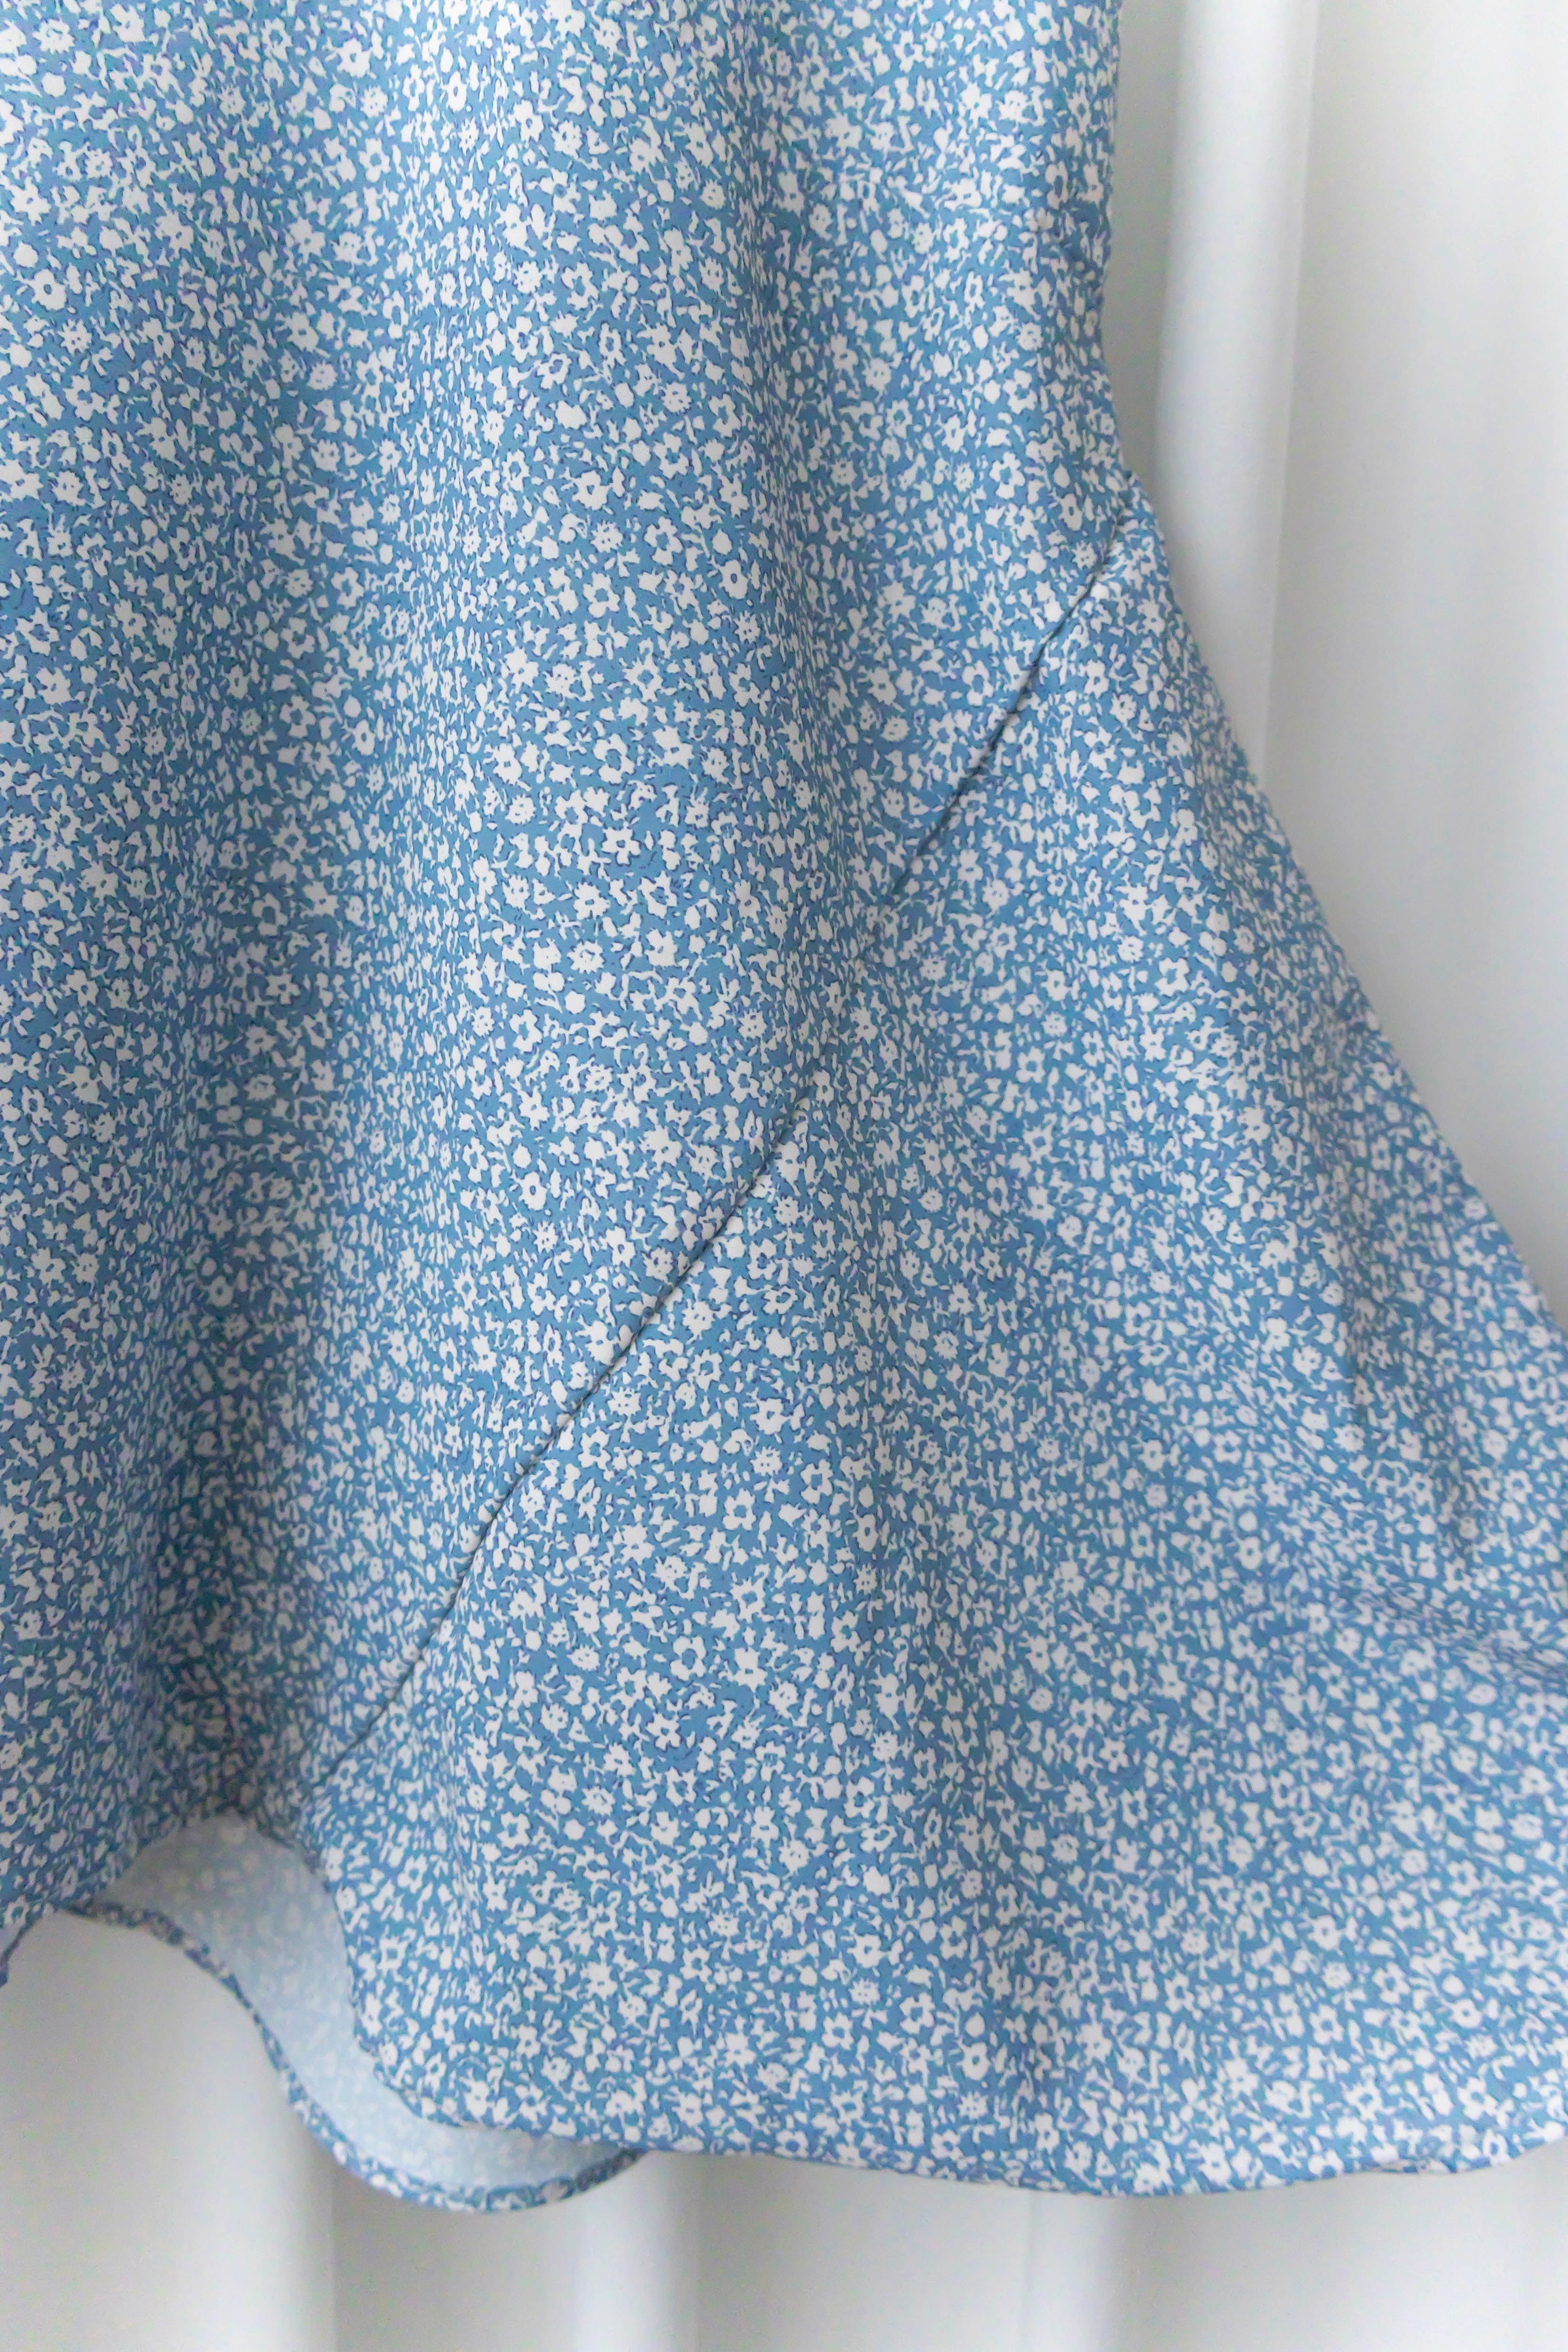 !𝕃𝔸𝕊𝕋 𝔽𝔼𝕎! Babybreath 藍色滿天星印花寬鬆魚尾連身裙, Dress/ DS9318